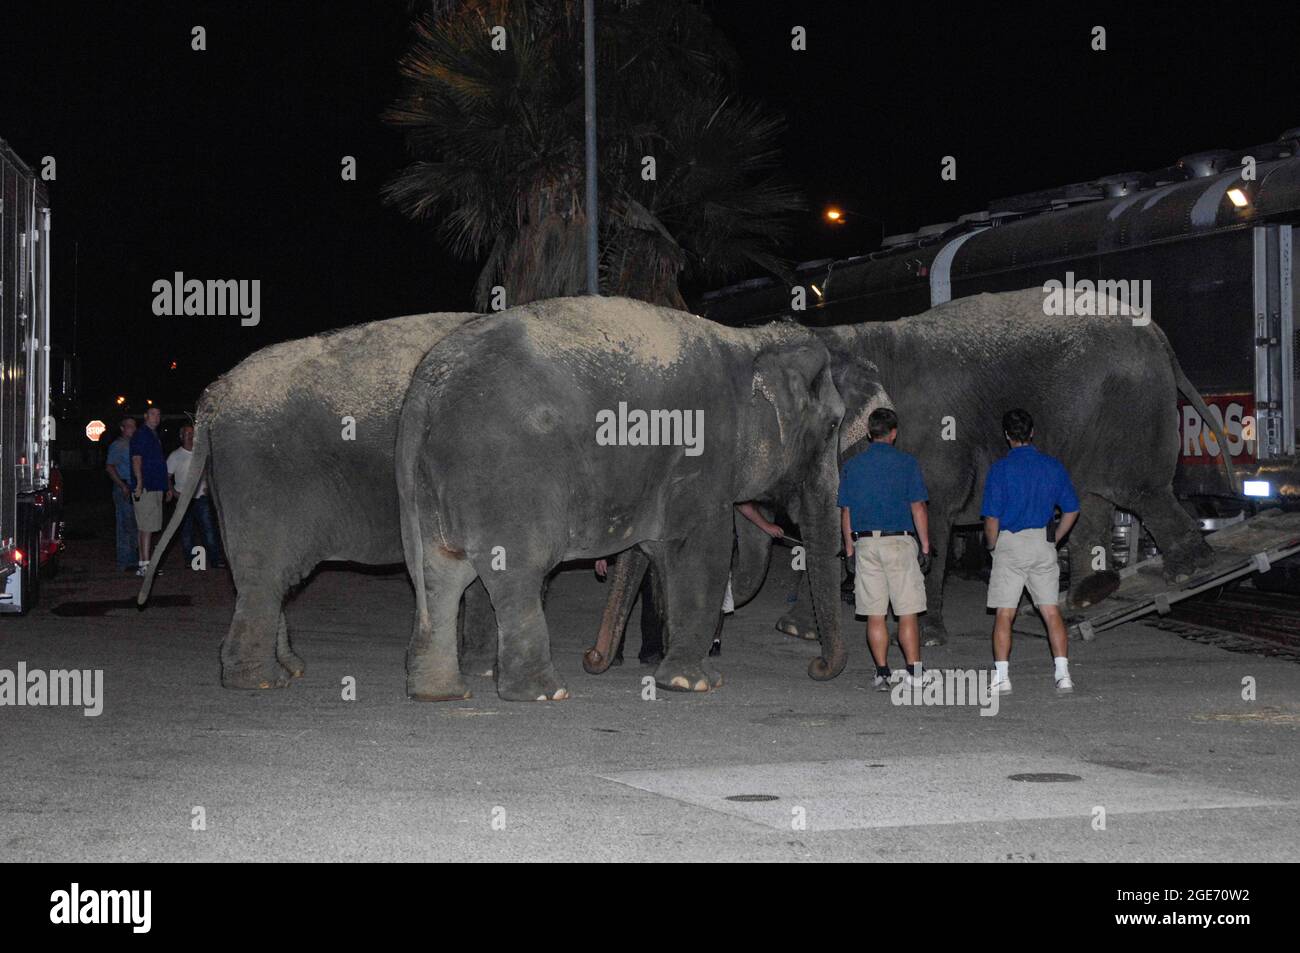 Los elefantes del tren de circo Ringling Bros. Y Barnum & Bailey se reúnen en el suelo antes de dirigirse a la ubicación del espectáculo en San Diego, California. Foto de stock